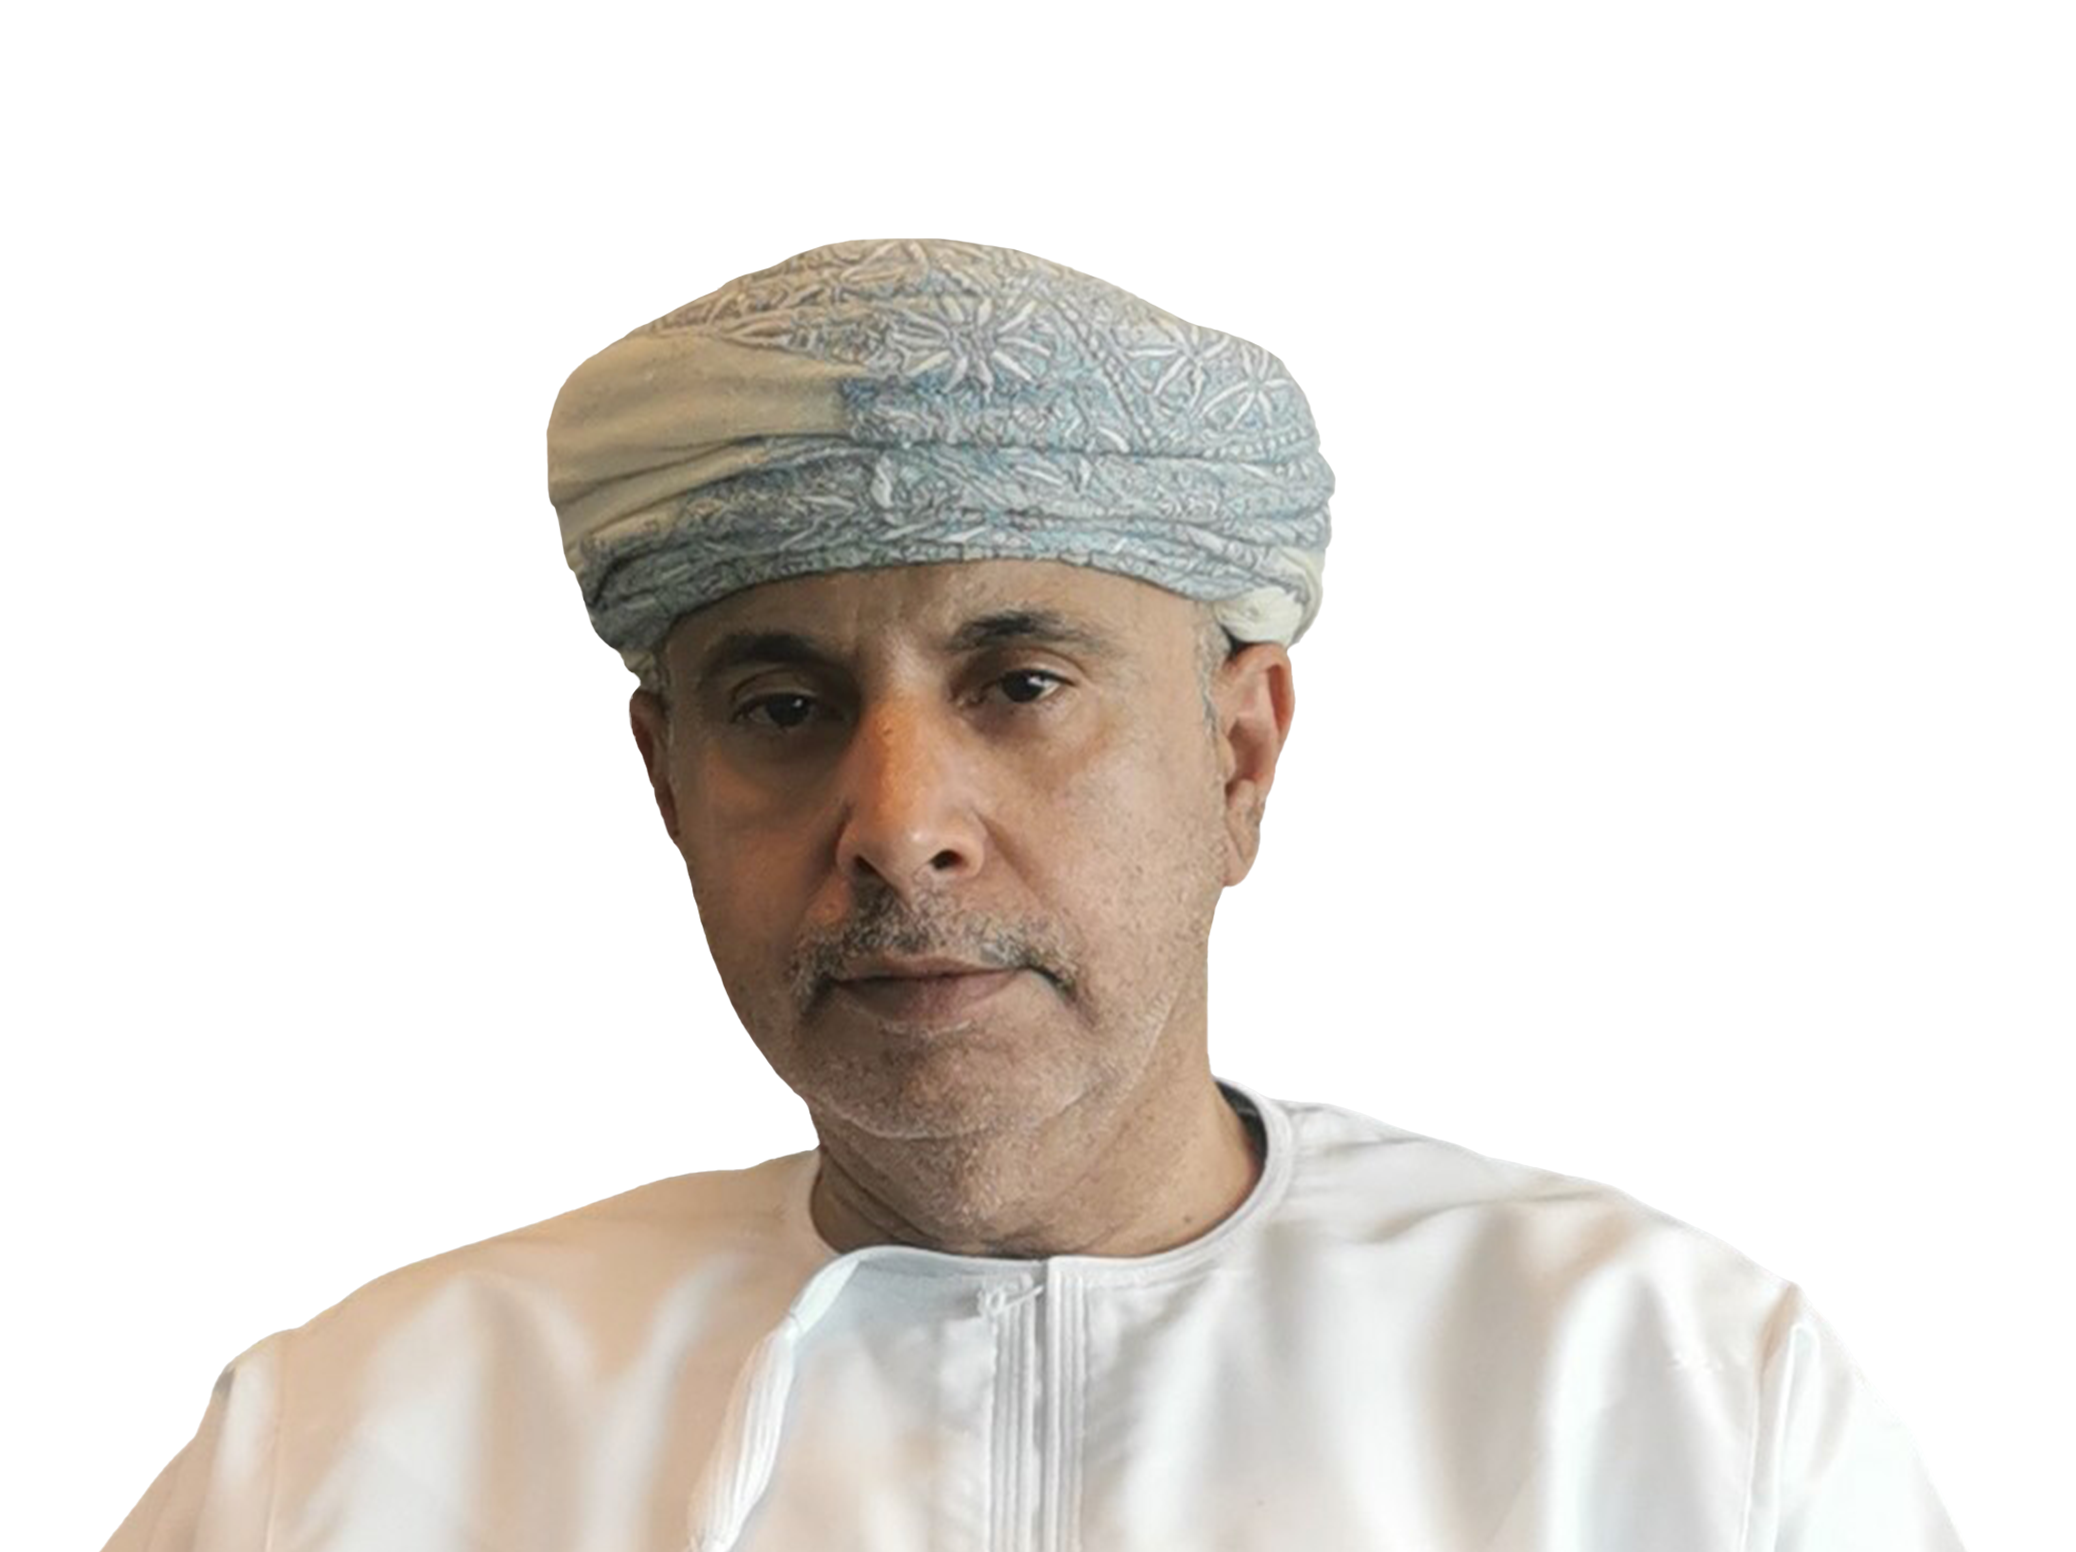 Khamis Mohamed Alzeedi